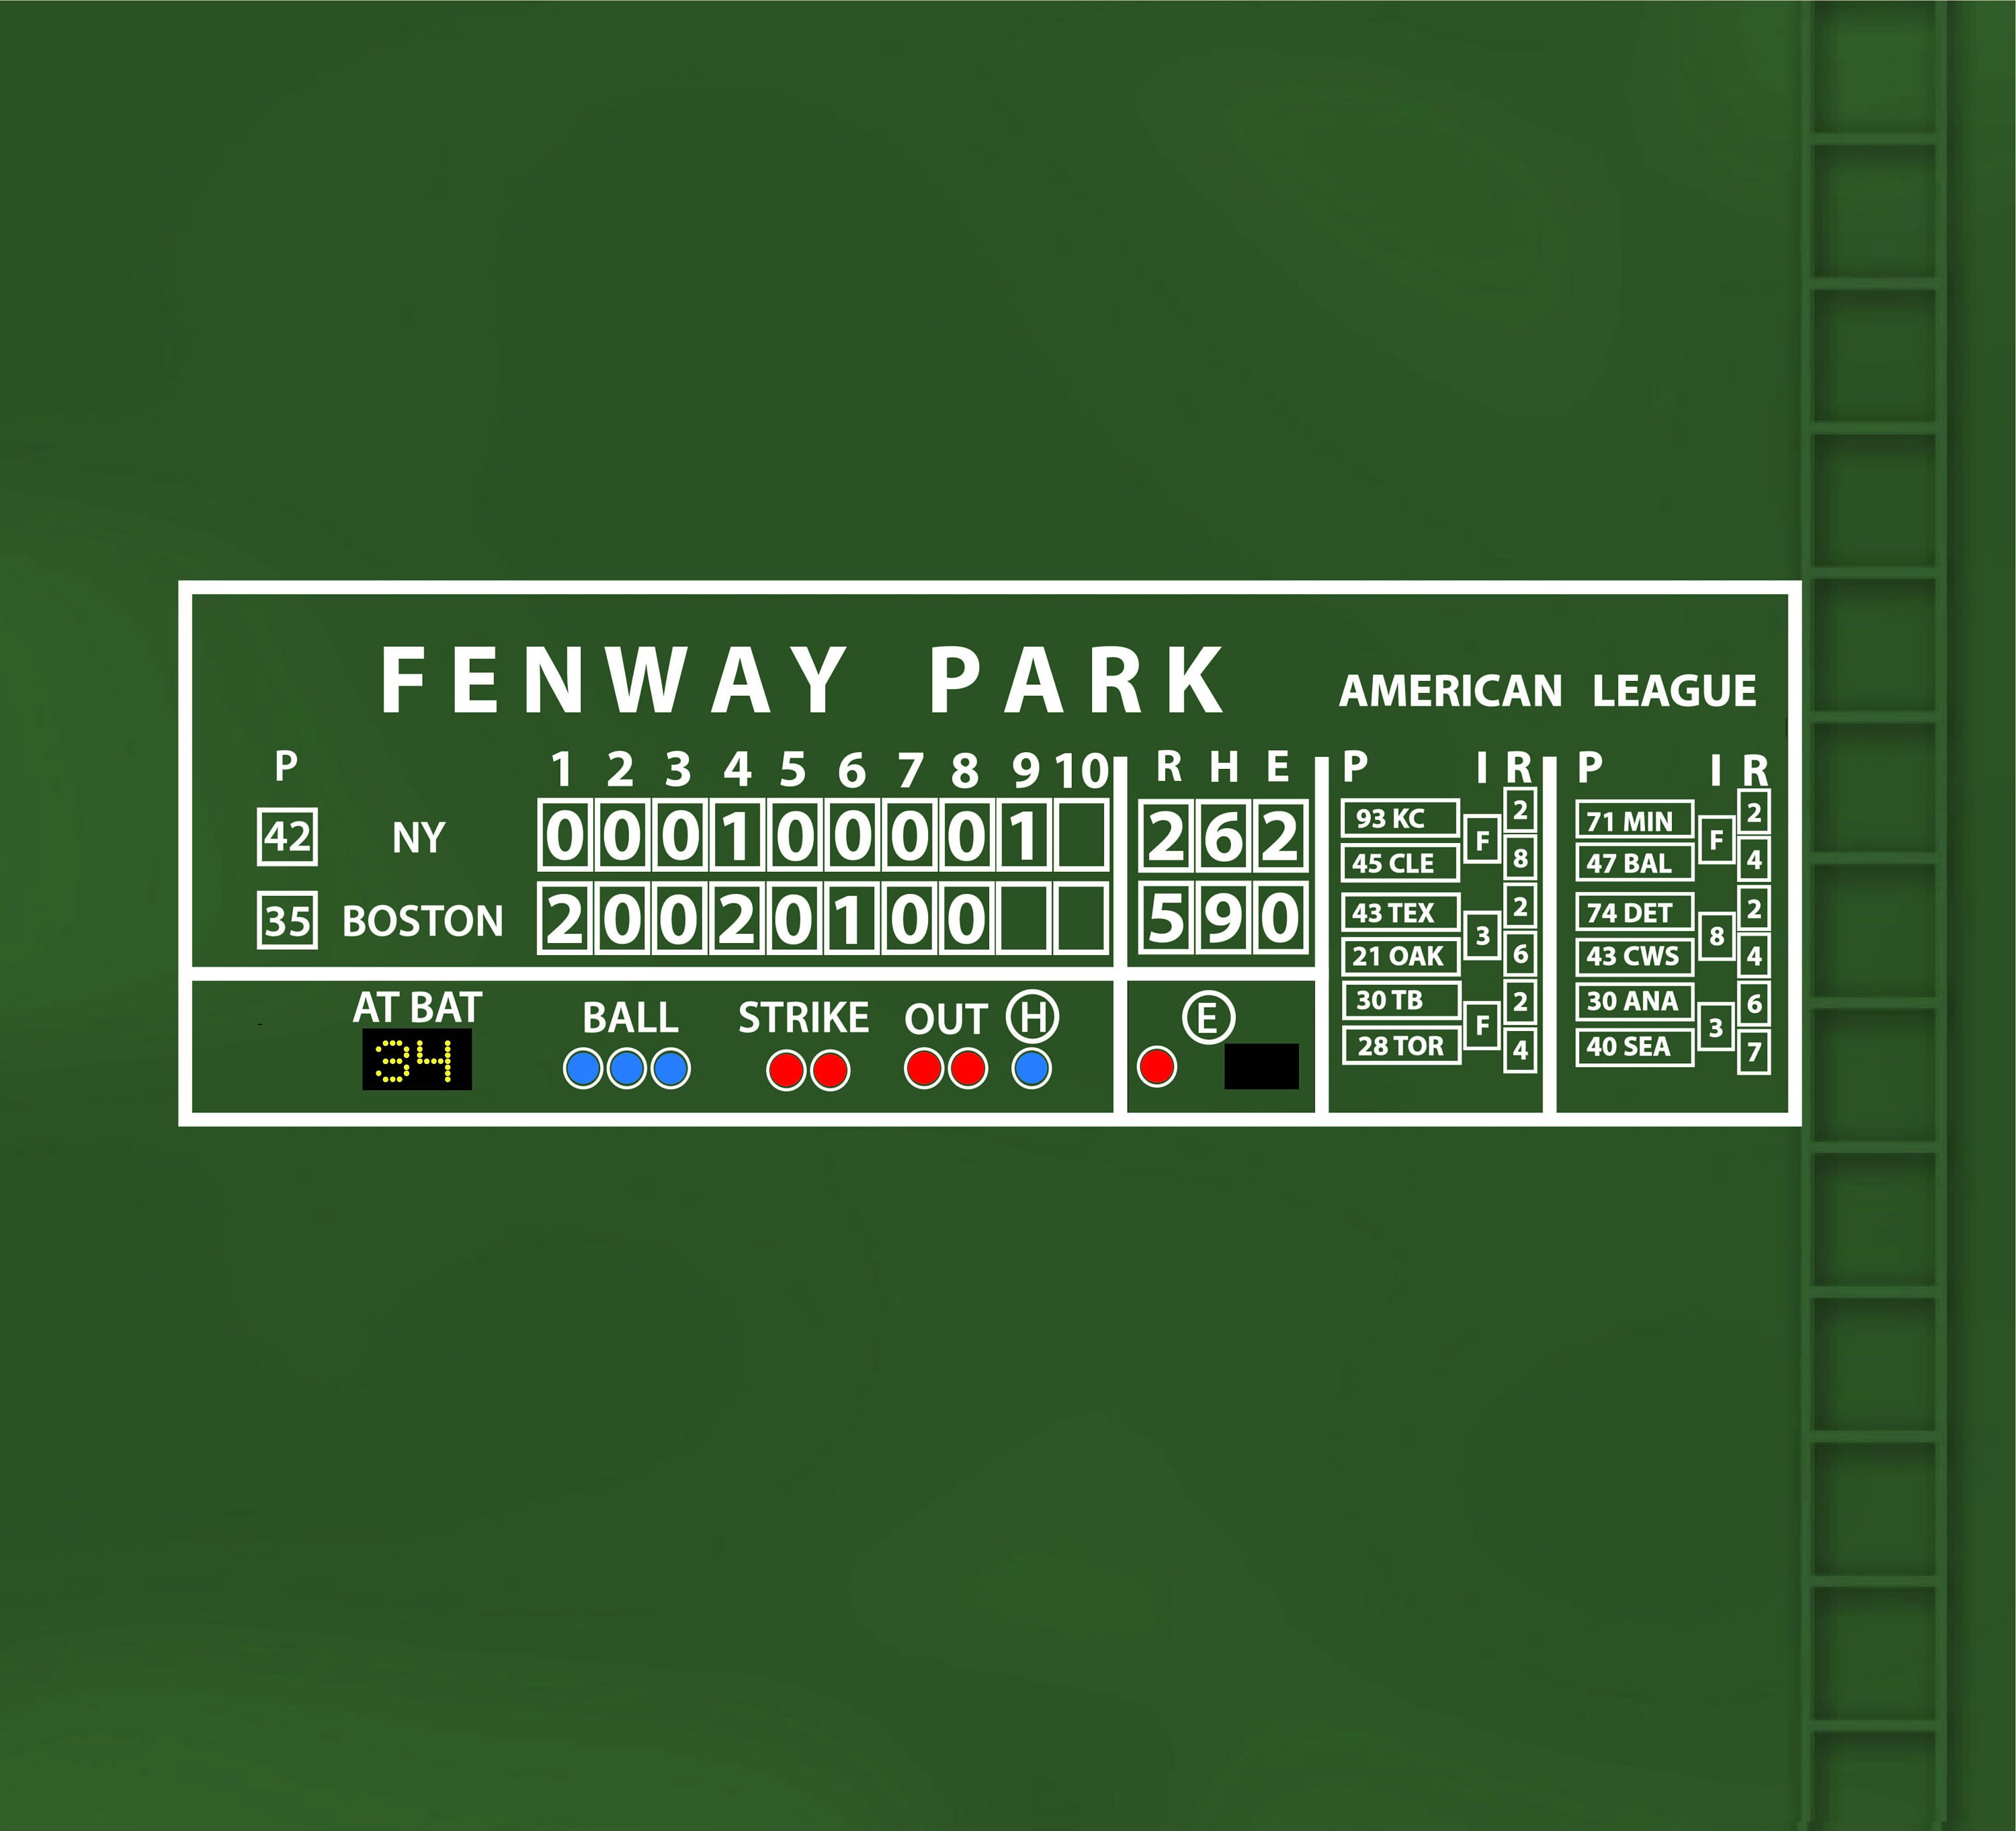 fenway park green monster scoreboard